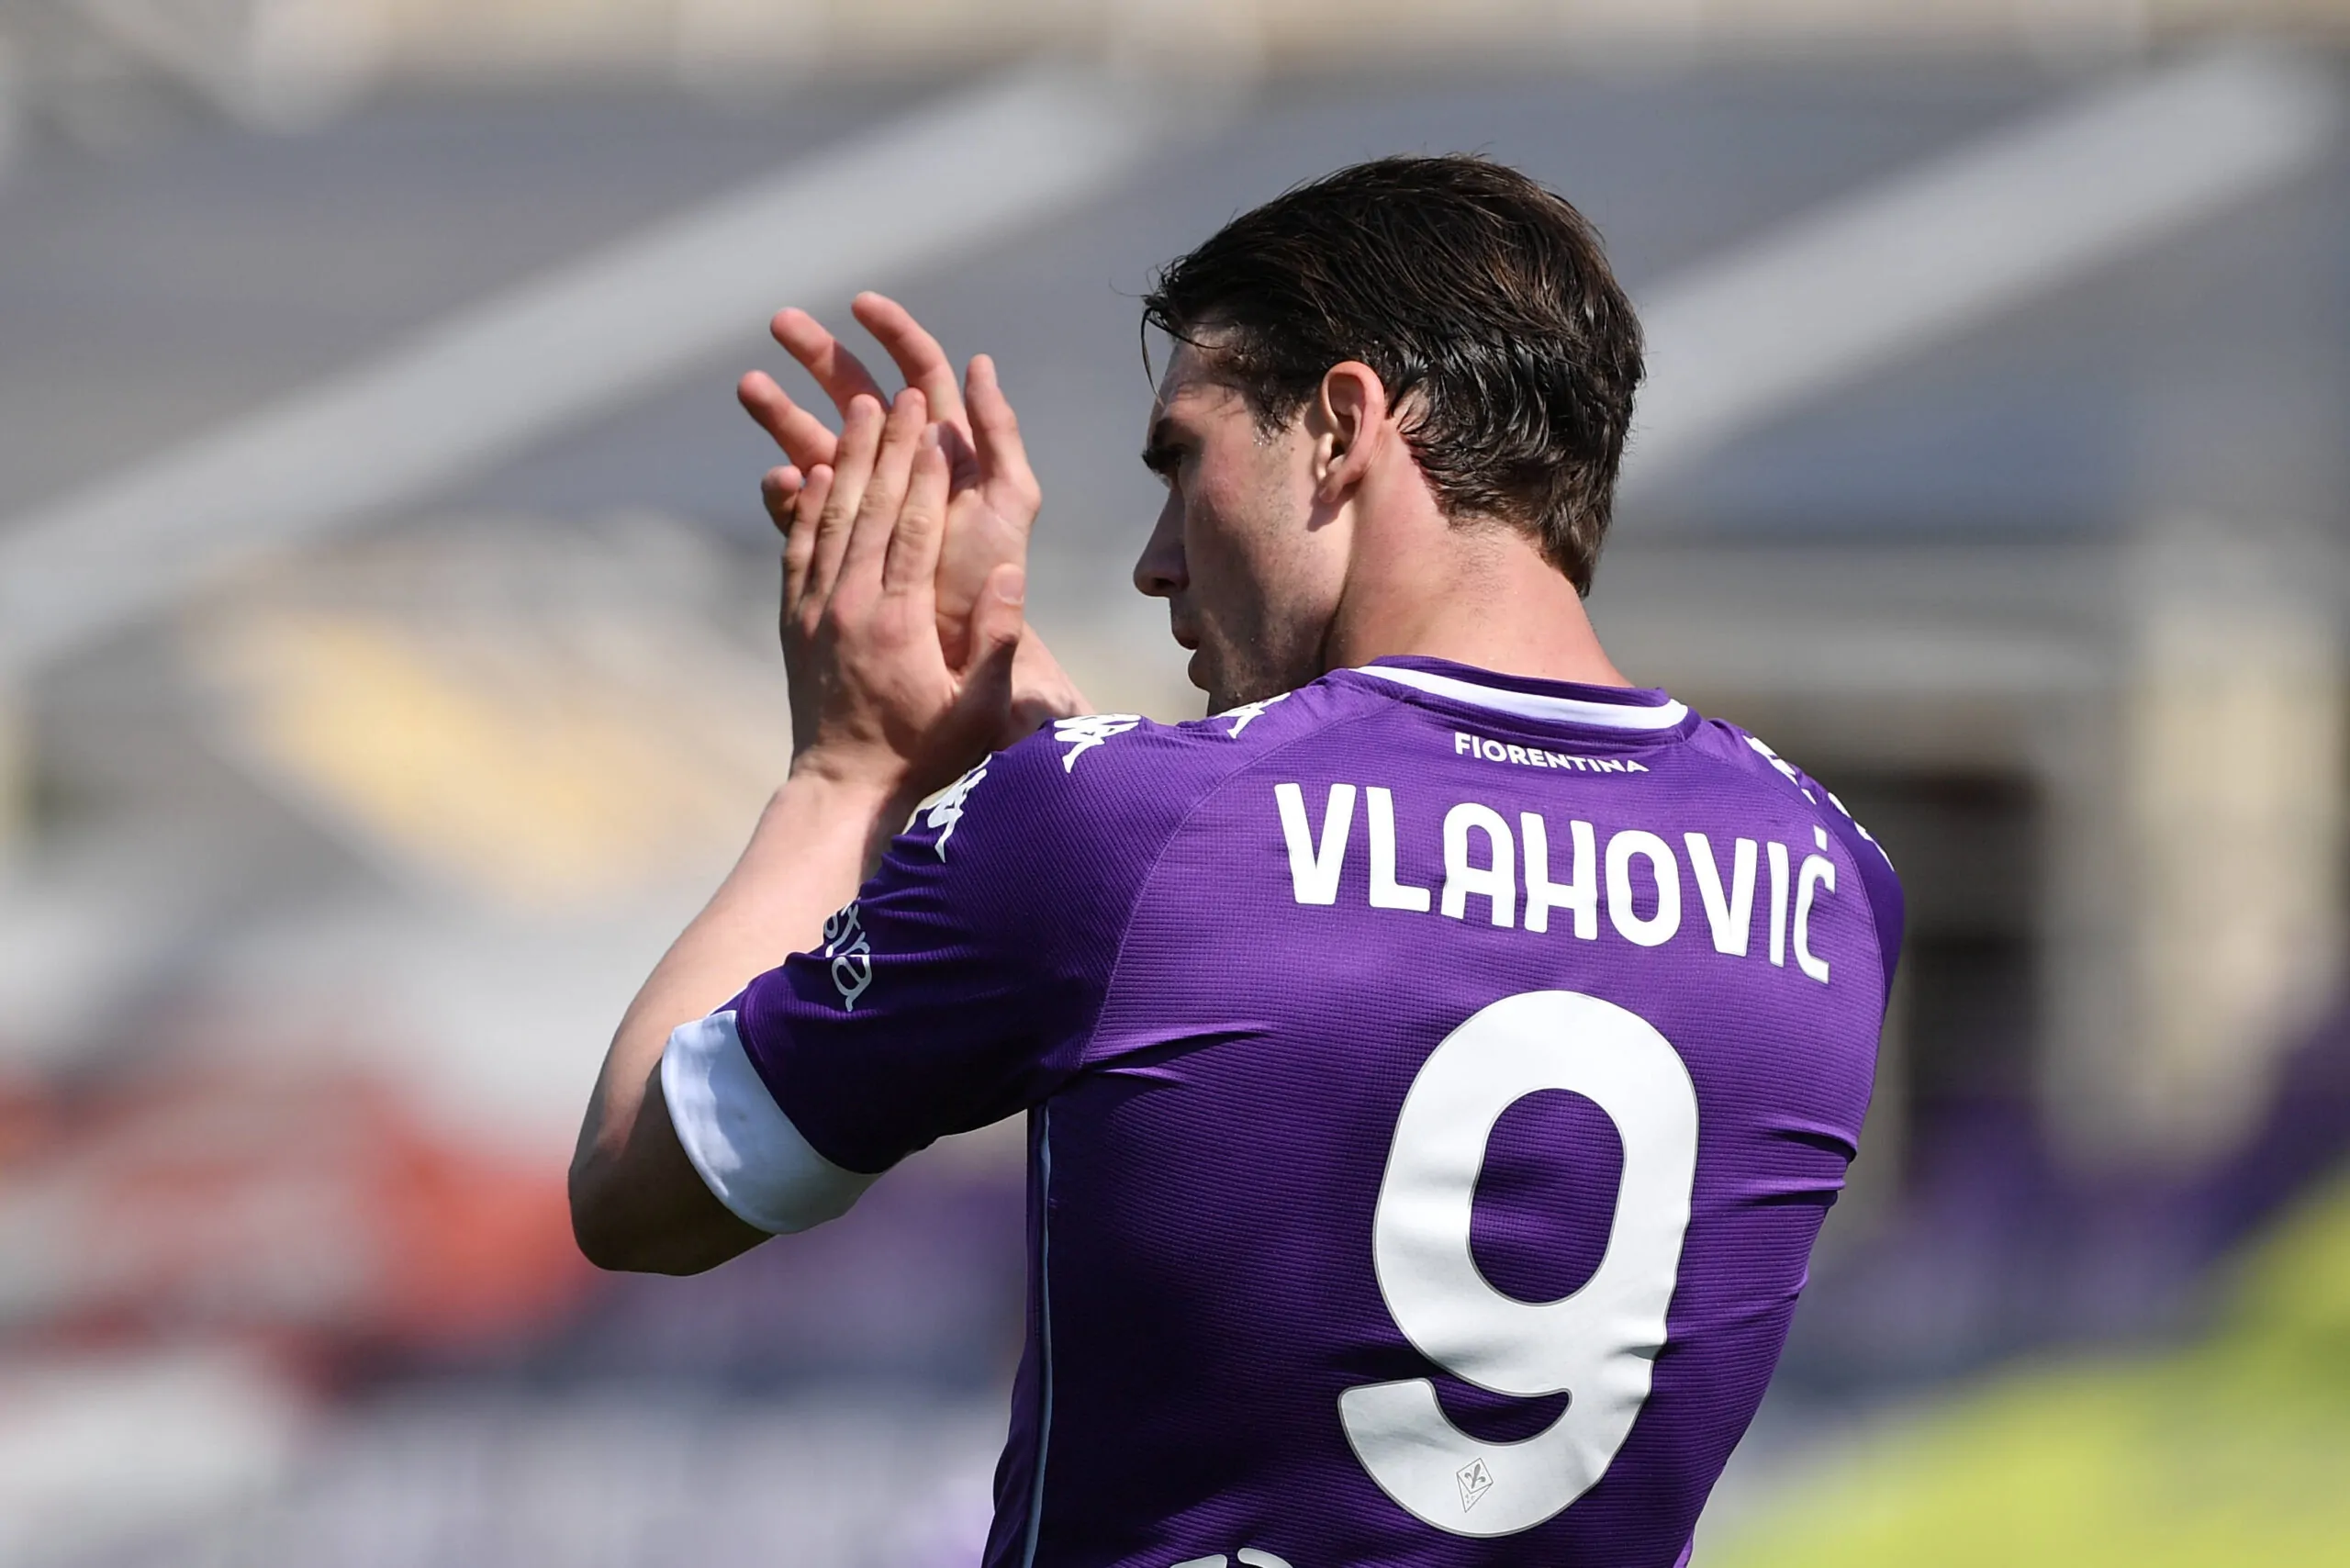 L’ex bianconero non ha dubbi: “Vlahovic, vai alla Juventus!”